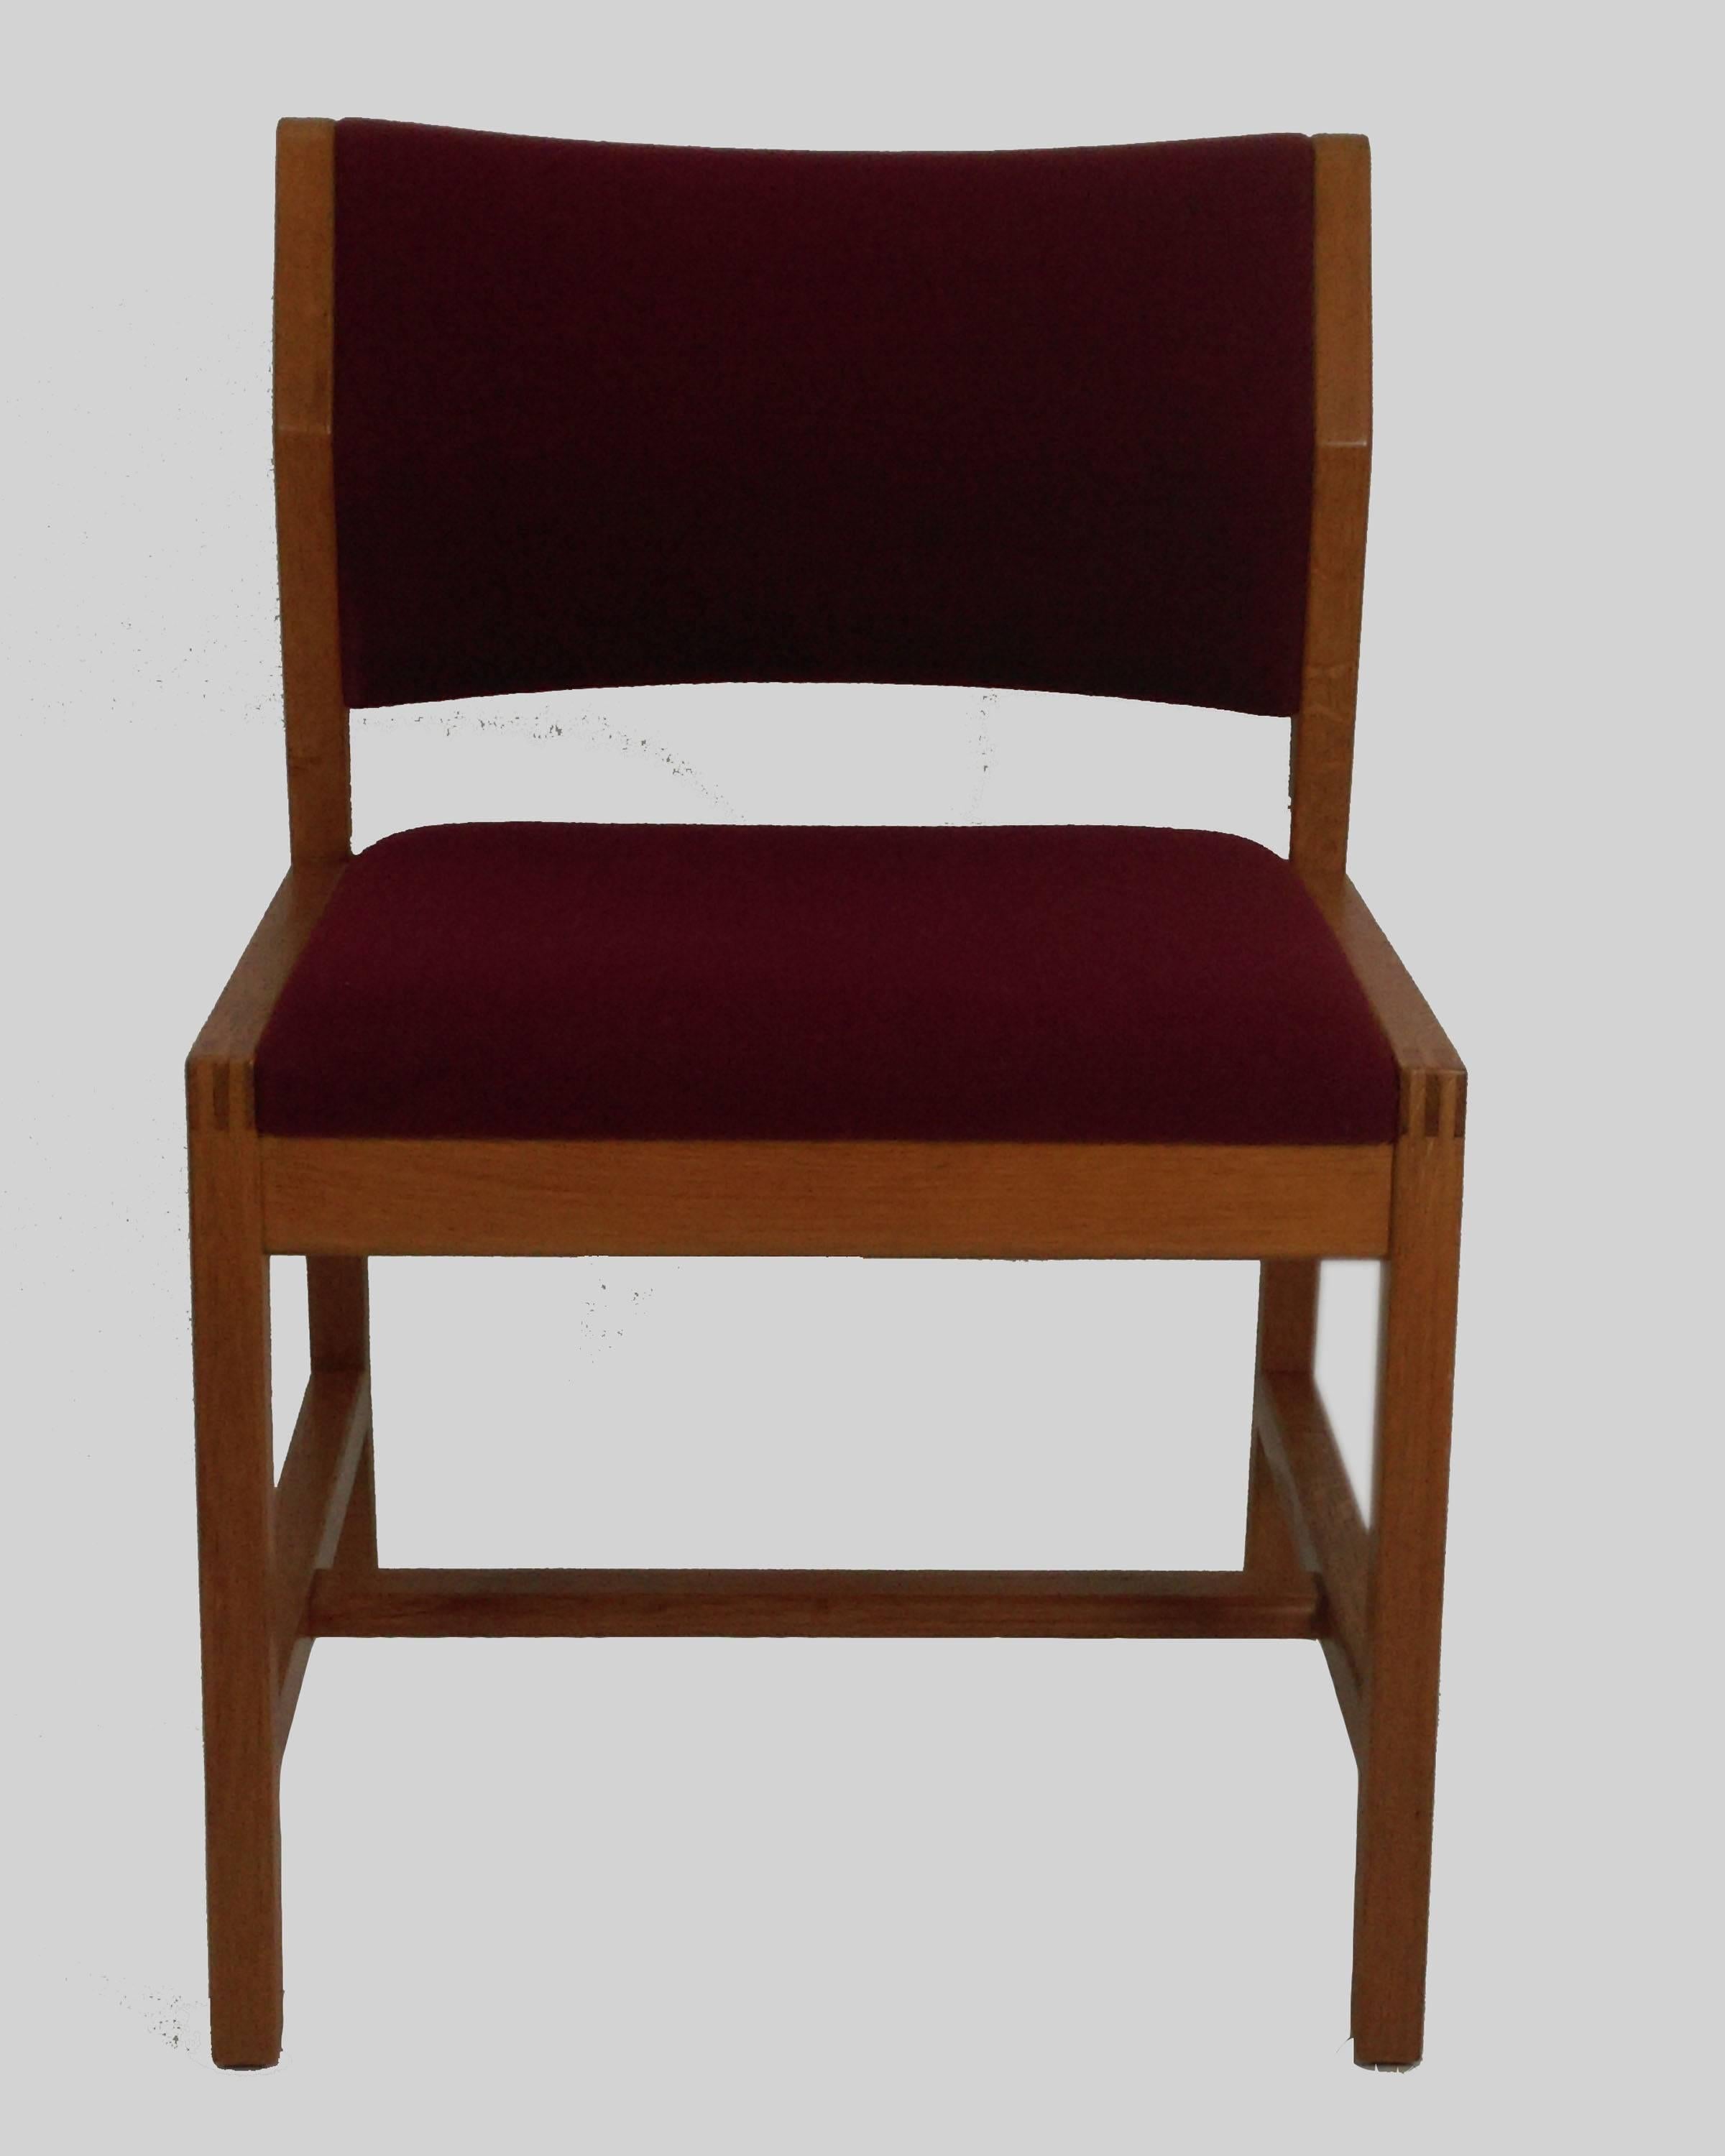 Ensemble de six chaises de salle à manger modèle 3241 en chêne, conçues en 1968 par Børge Mogensen pour Frederecia Stolefabrik.

Les chaises et la tapisserie sont en très bon état.